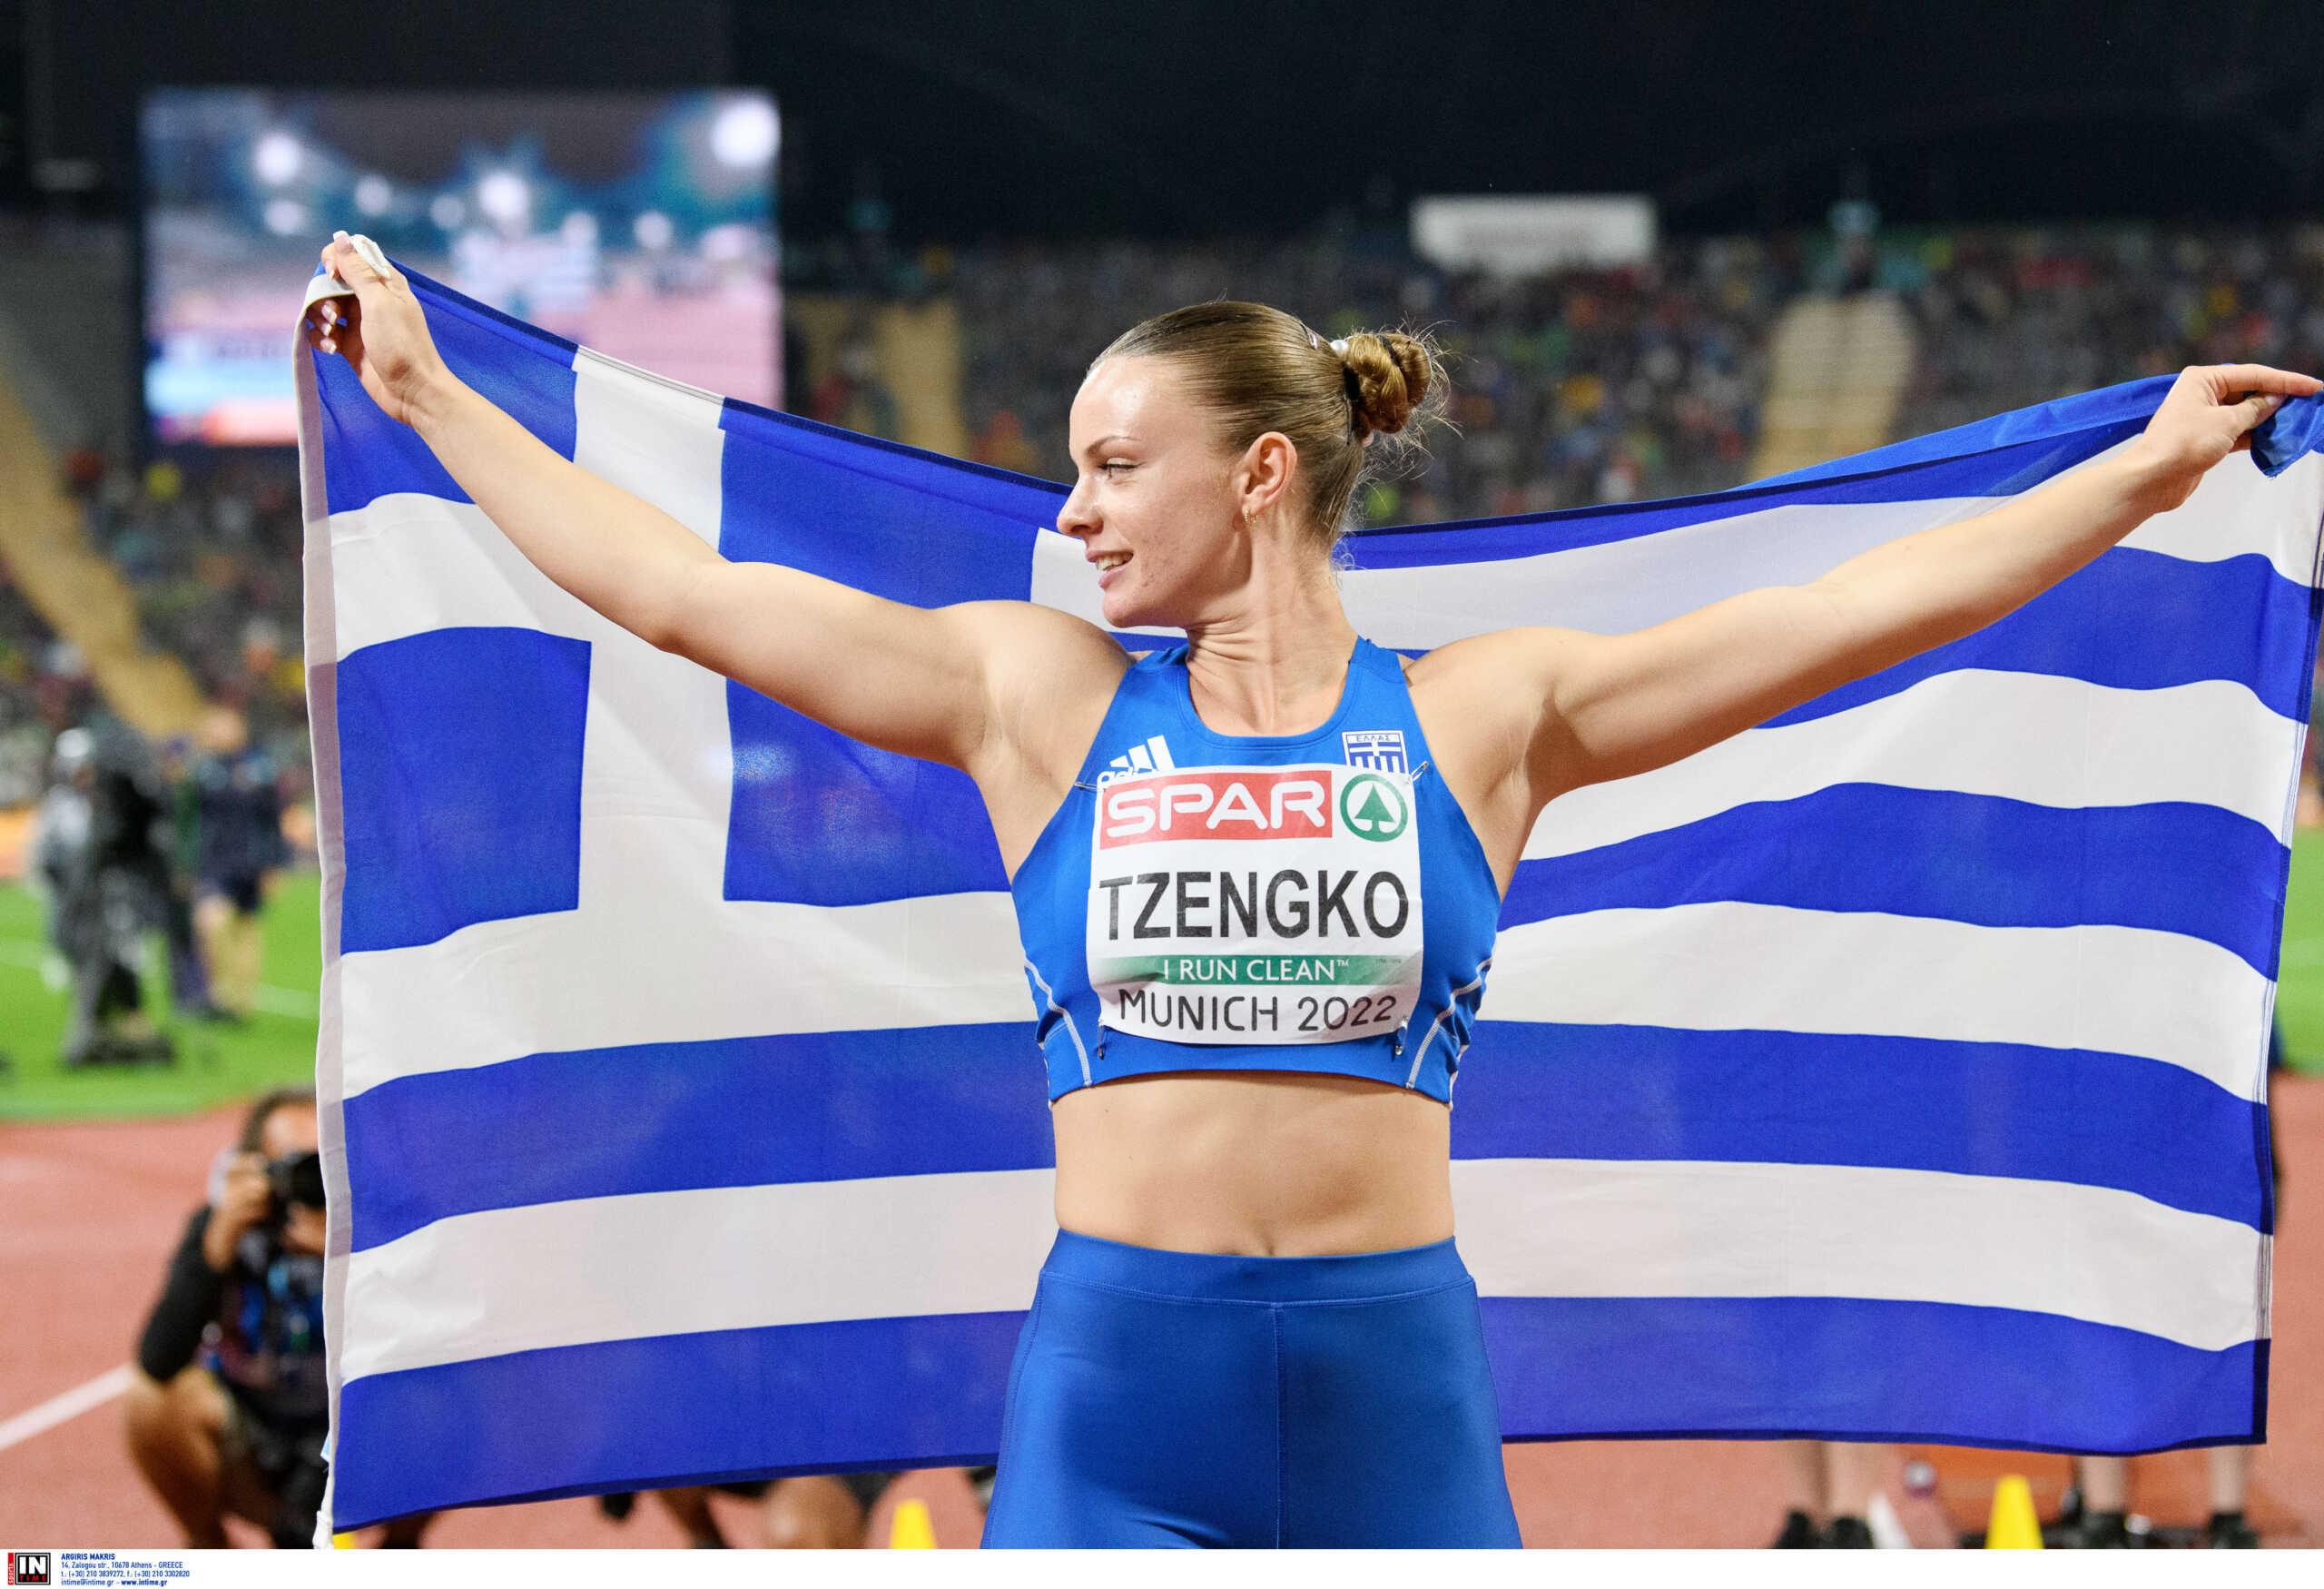 Ελίνα Τζένγκο: «Eτοιμαζόμουν και τελευταία στιγμή δεν πήγαινα στον αγώνα γιατί δεν είχα την ελληνική υπηκοότητα»